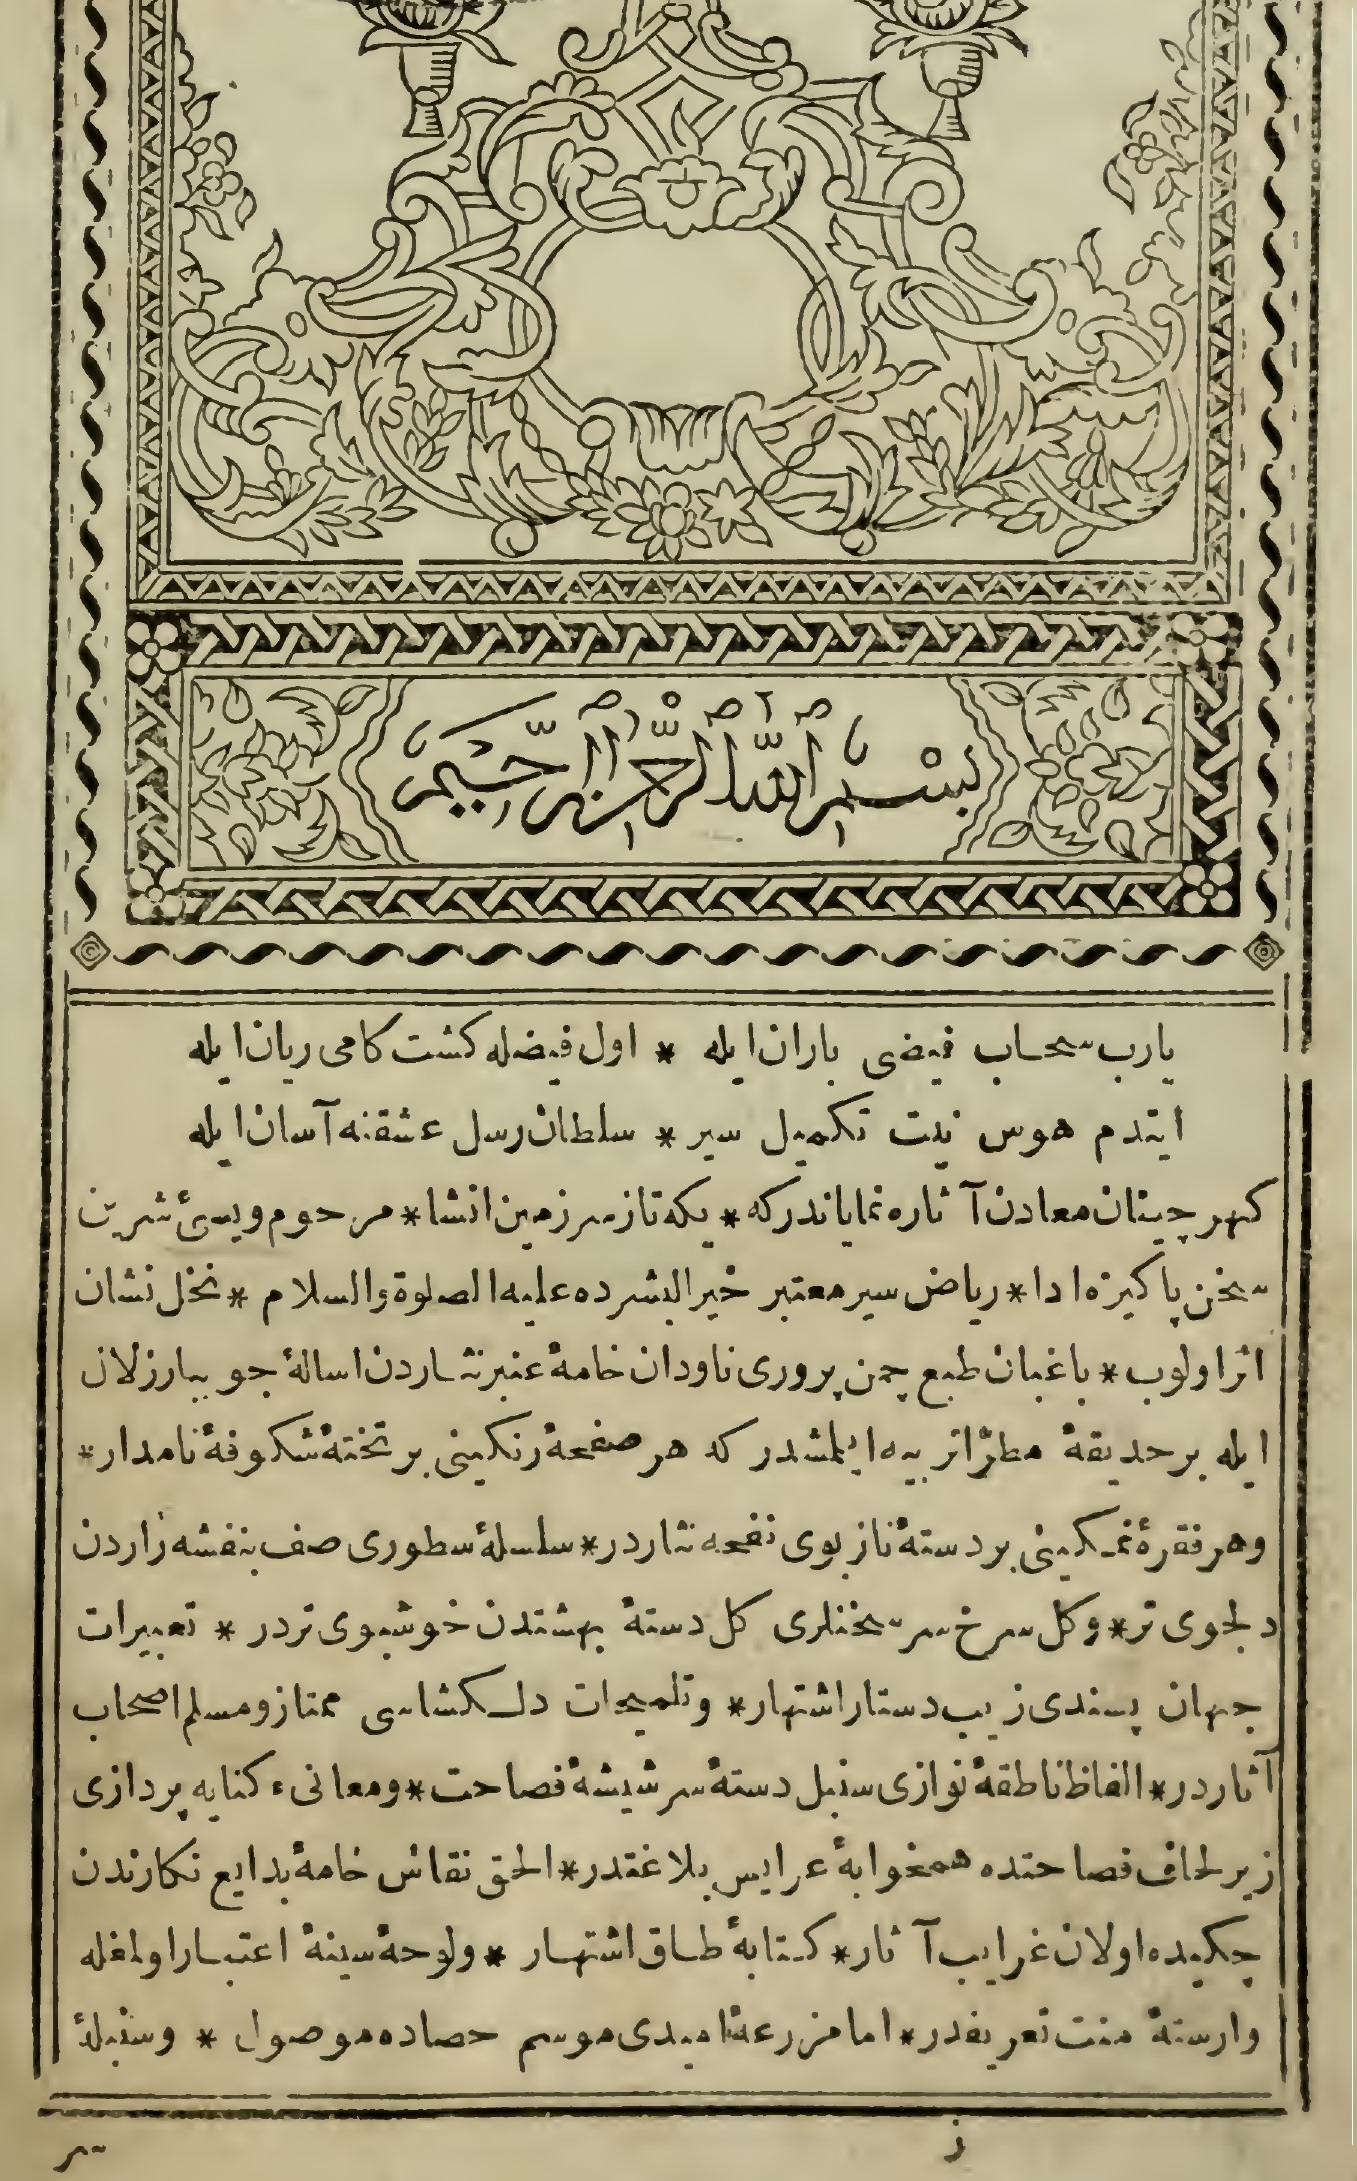 File:First Page of Siyer-i Nebi (1832), Ottoman Turkish Sira.jpg -  Wikimedia Commons